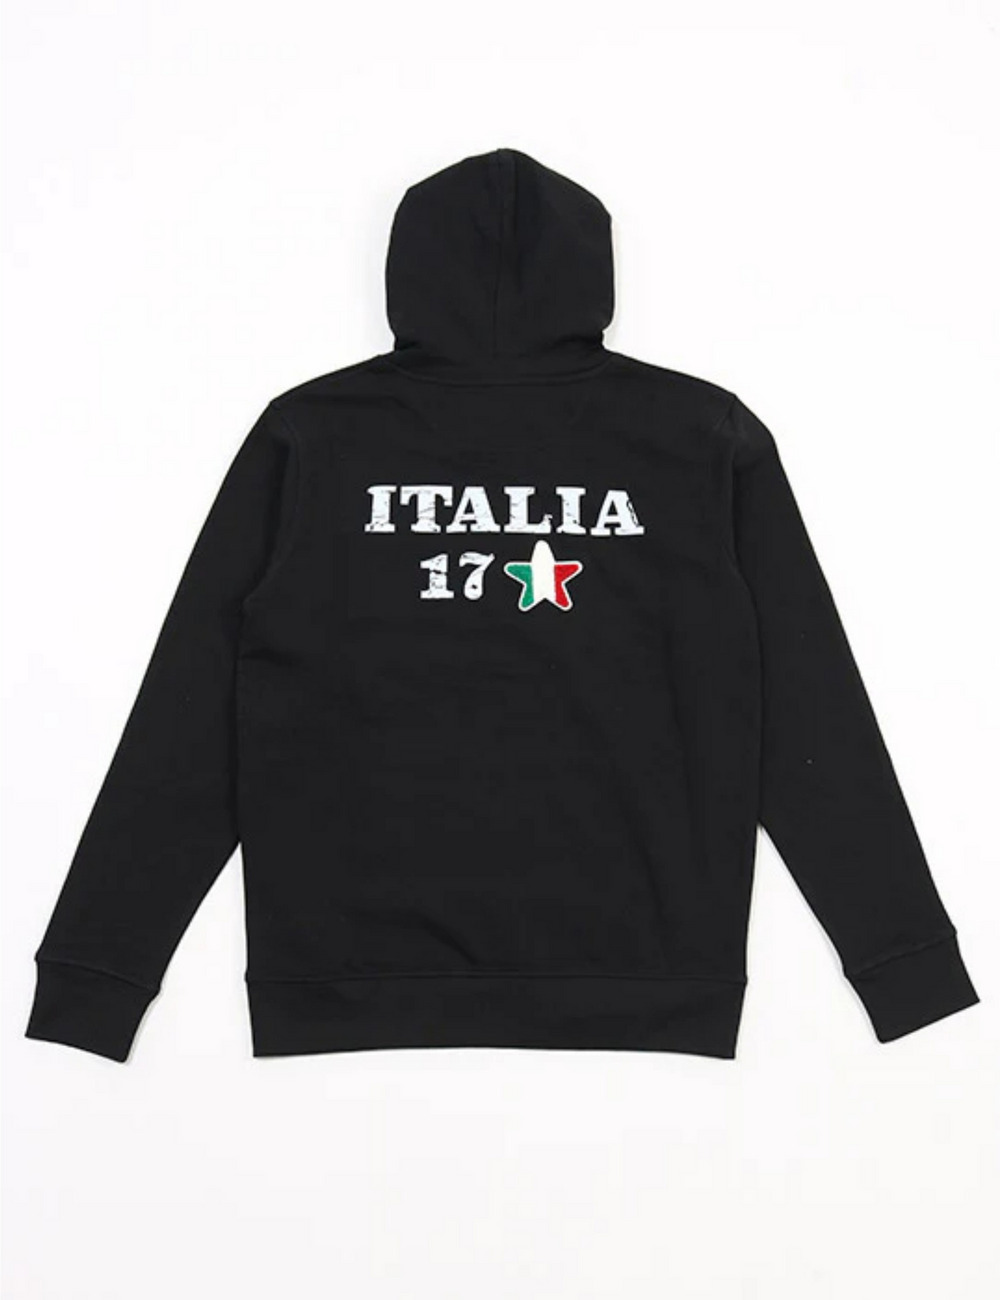 イタリア17 フーディ / ITALIA 17 HOODIE 詳細画像 ブラック 2